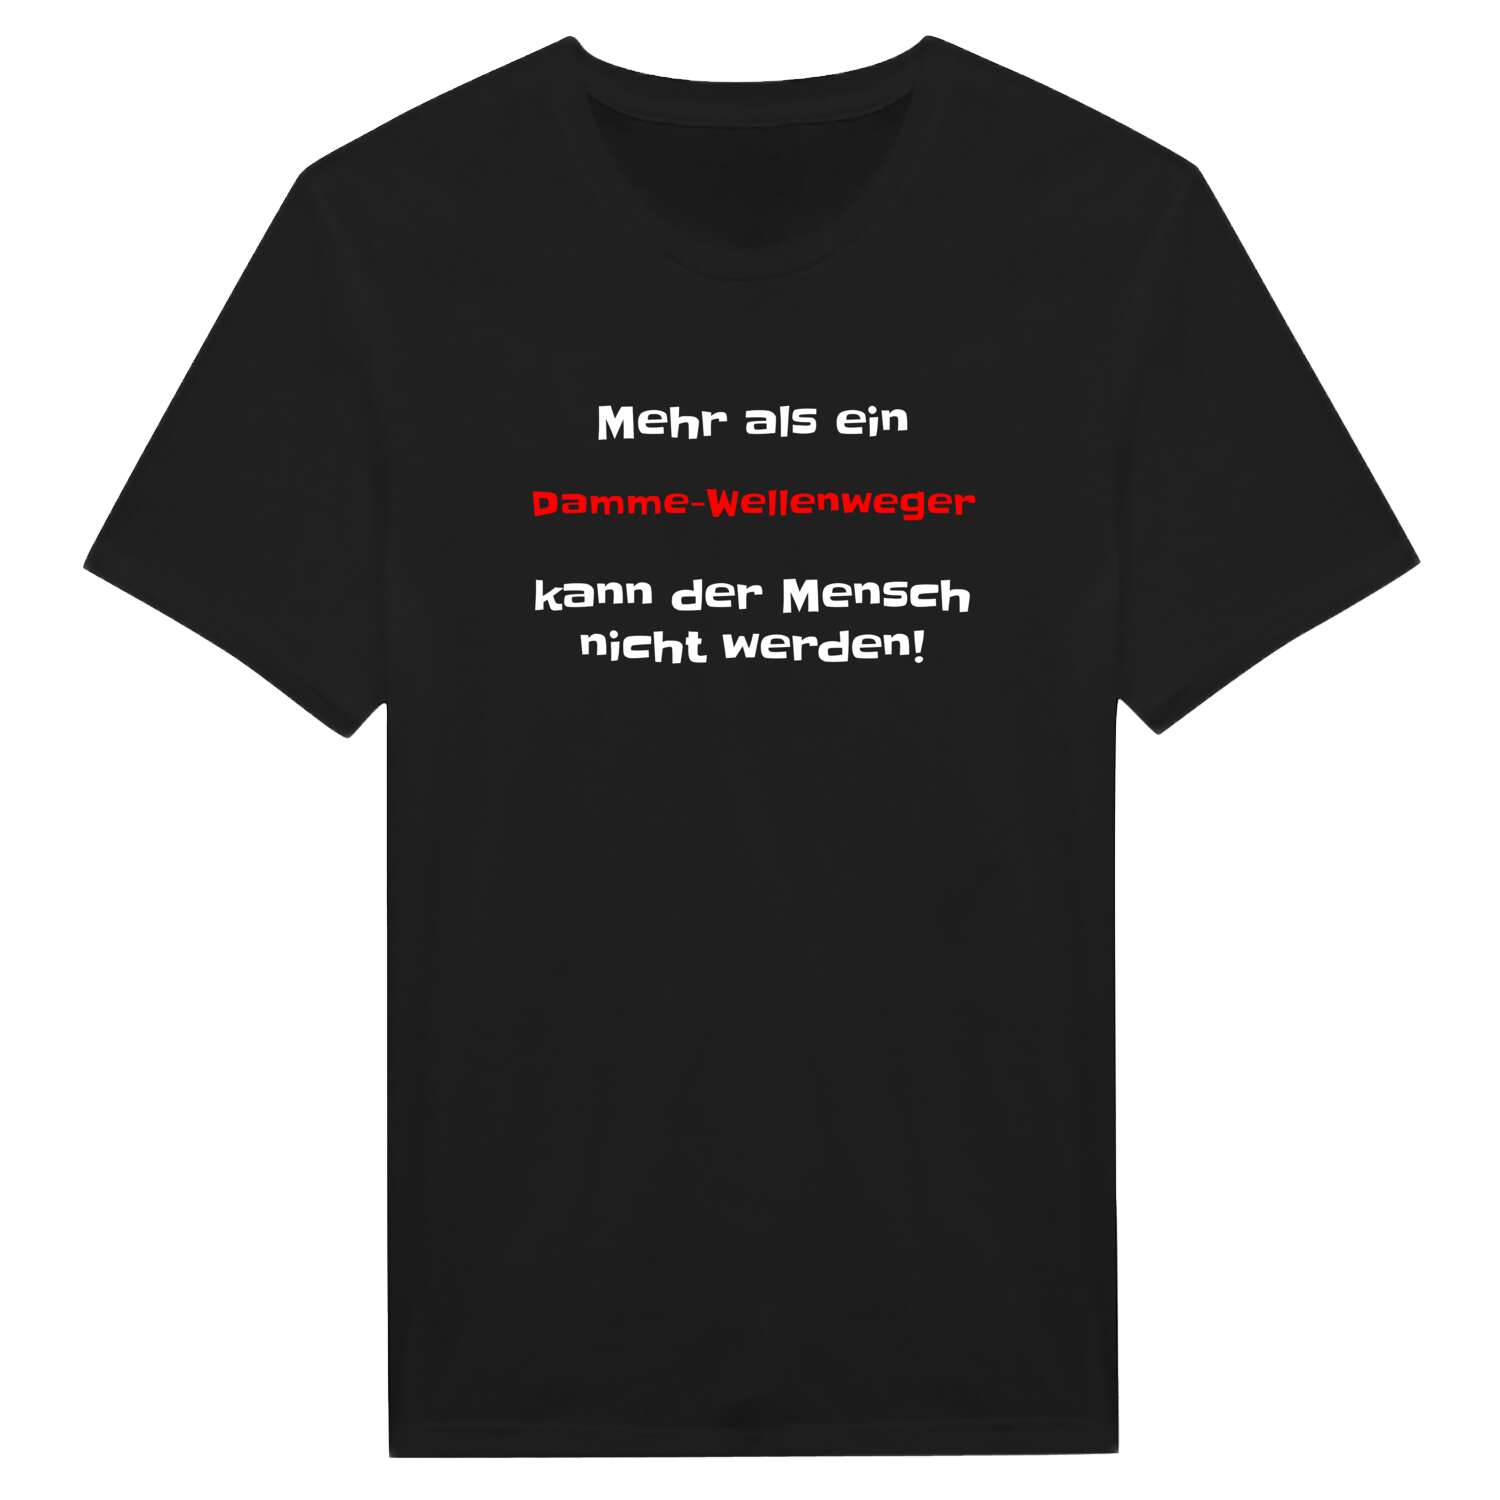 Damme-Wellenweg T-Shirt »Mehr als ein«